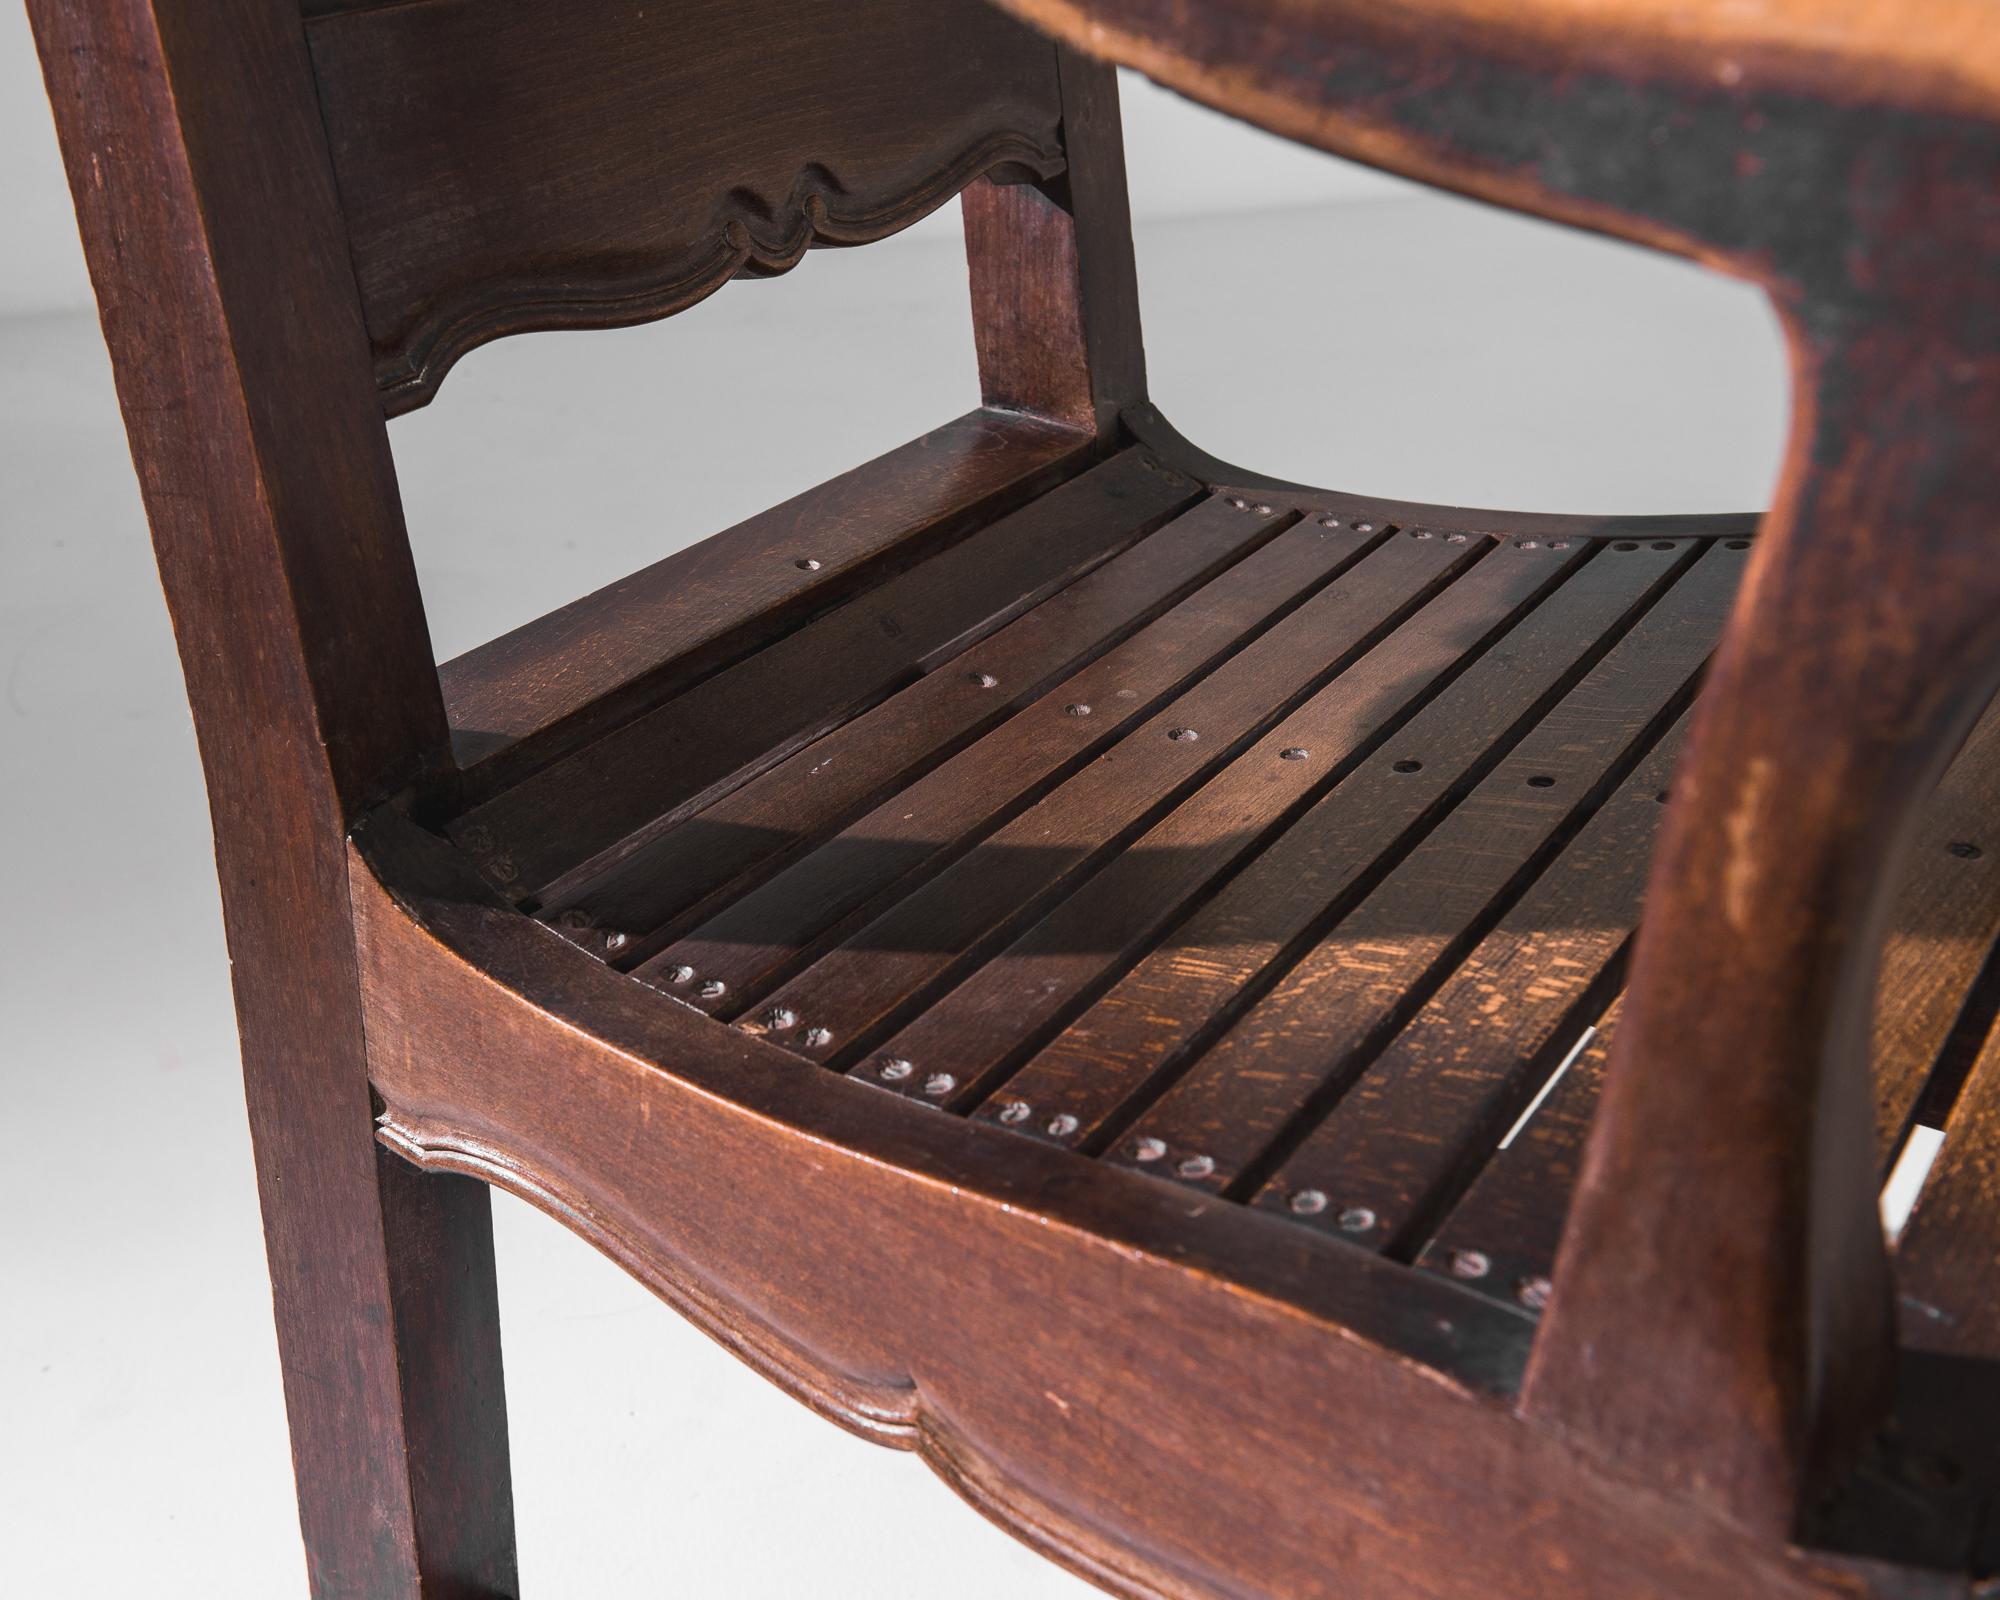 Fauteuil en bois créé en Belgique au début du 20e siècle. Avec son dossier haut et sa dignité, ce somptueux fauteuil rayonne d'une aura d'autorité royale. Des tabliers somptueusement sculptés, des pieds latés et un dossier à panneaux témoignent d'un